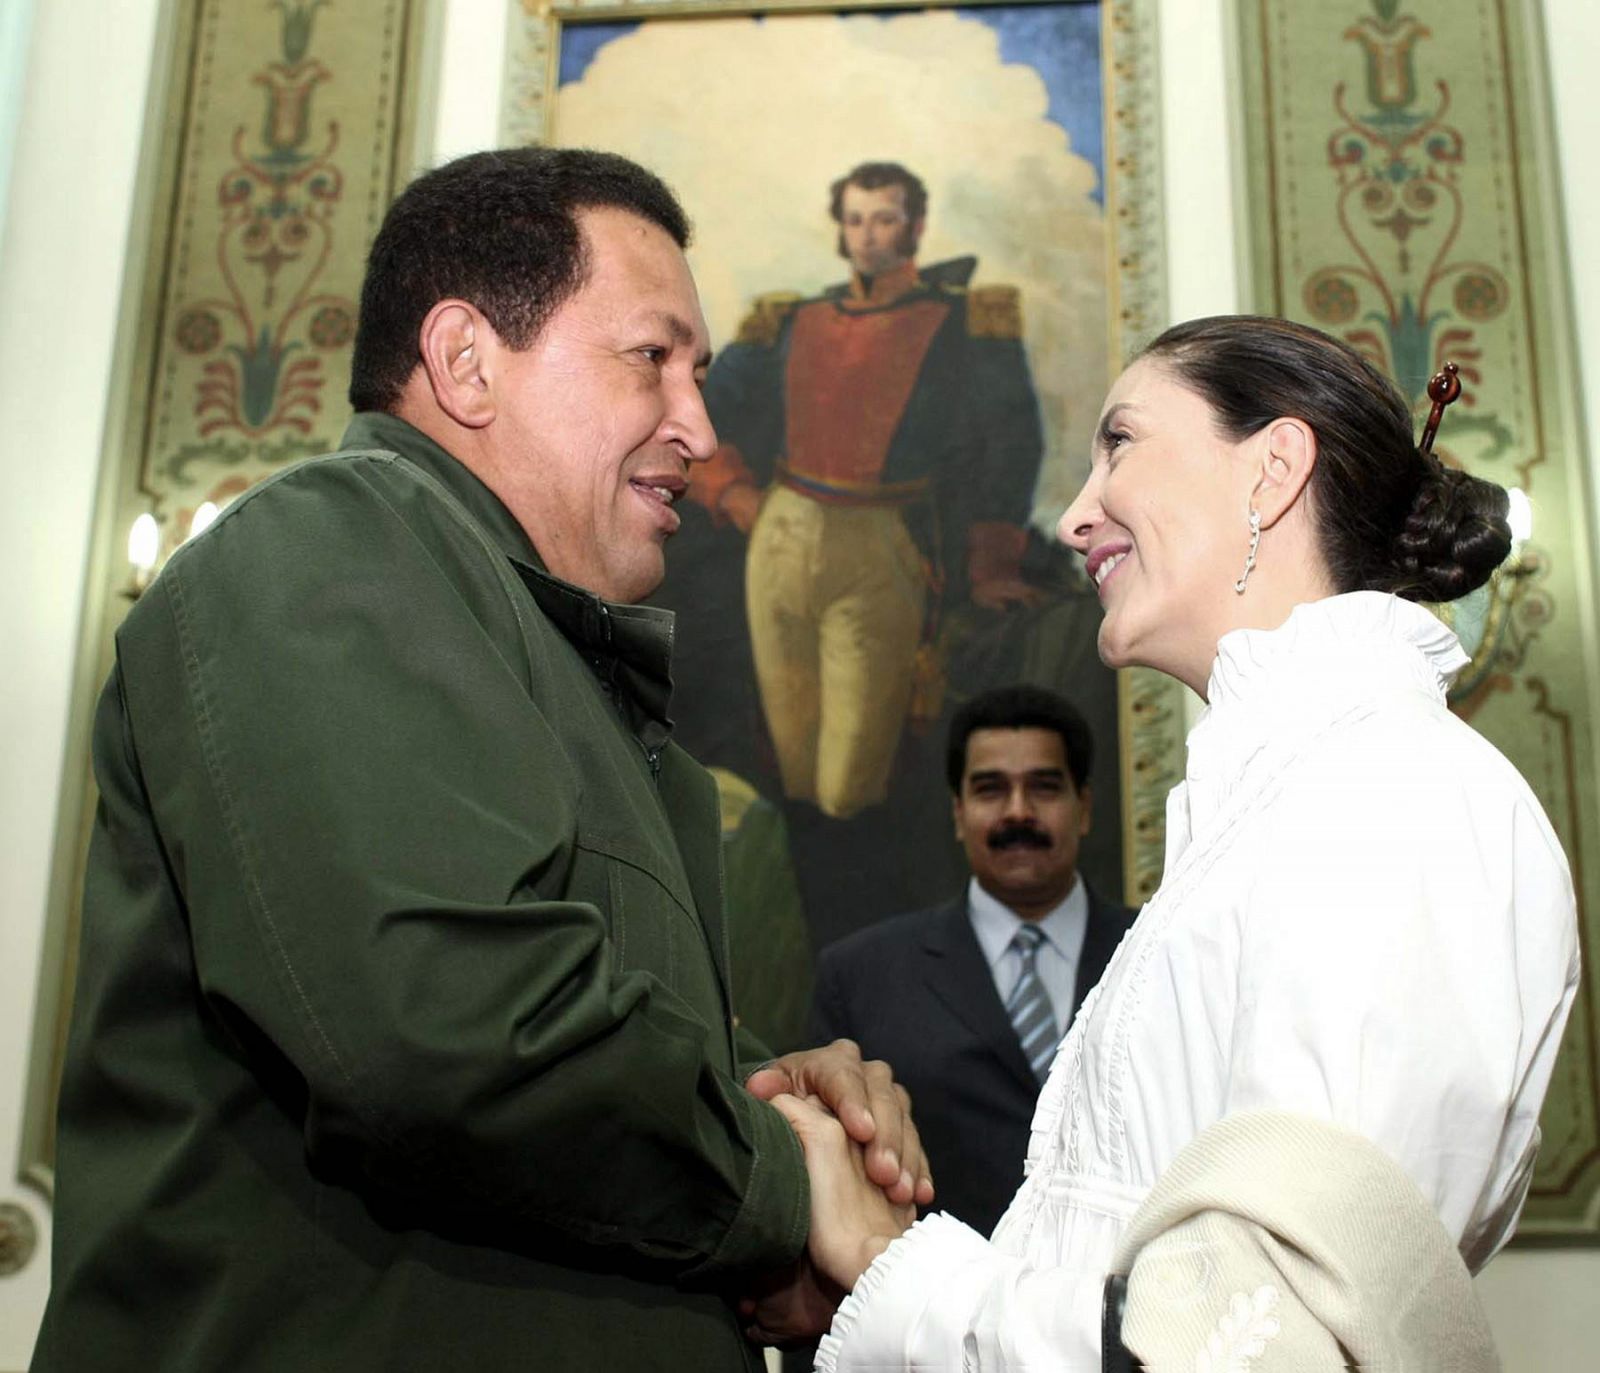 La ex rehén de las Fuerzas Armadas revolucionarias de Colombia (FARC) y ex candidata presidencial Ingrid Betancourt se ha reunido con el presidente de Venezuela, Hugo Chávez en el Palacio de Miraflores en Caracas.